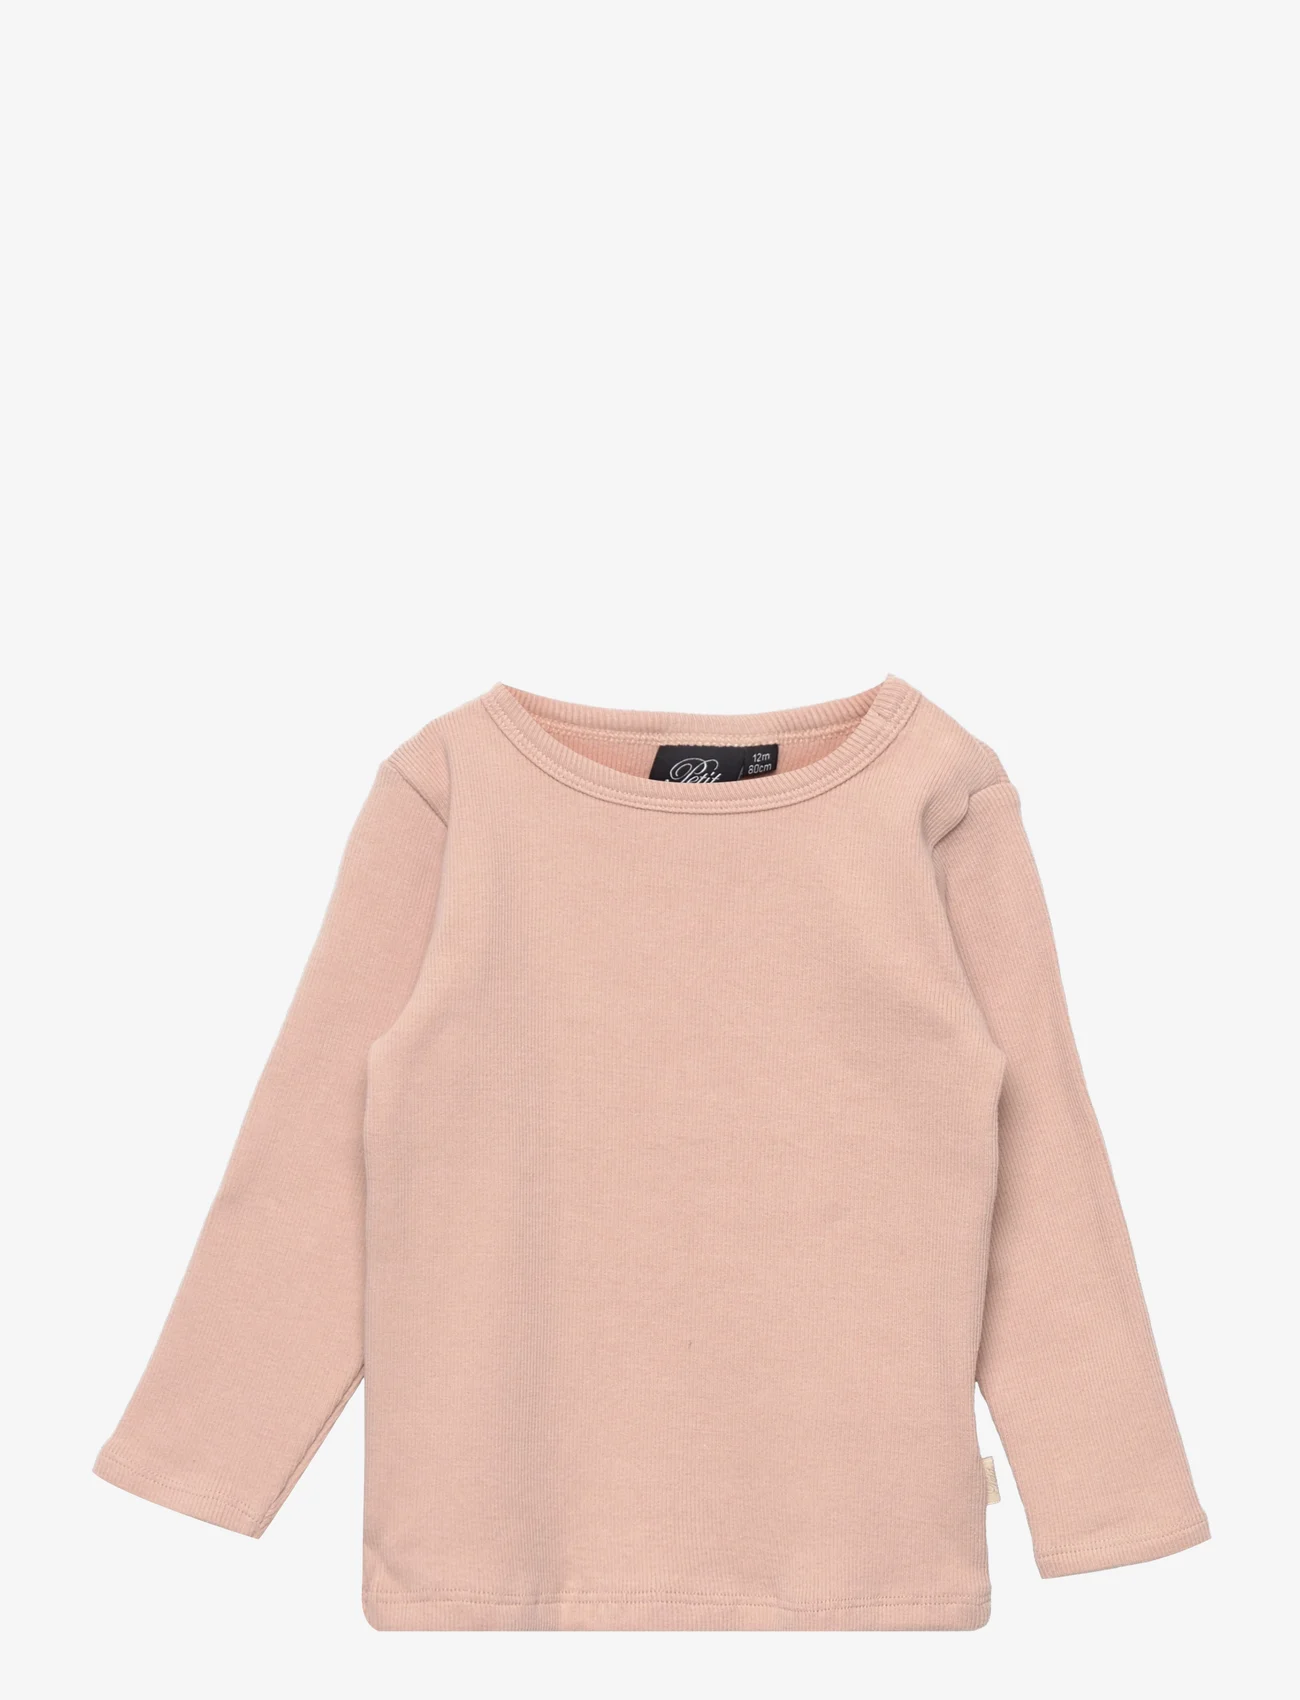 Sofie Schnoor Baby and Kids - T-shirt long-sleeve - marškinėliai ilgomis rankovėmis - light rose - 0